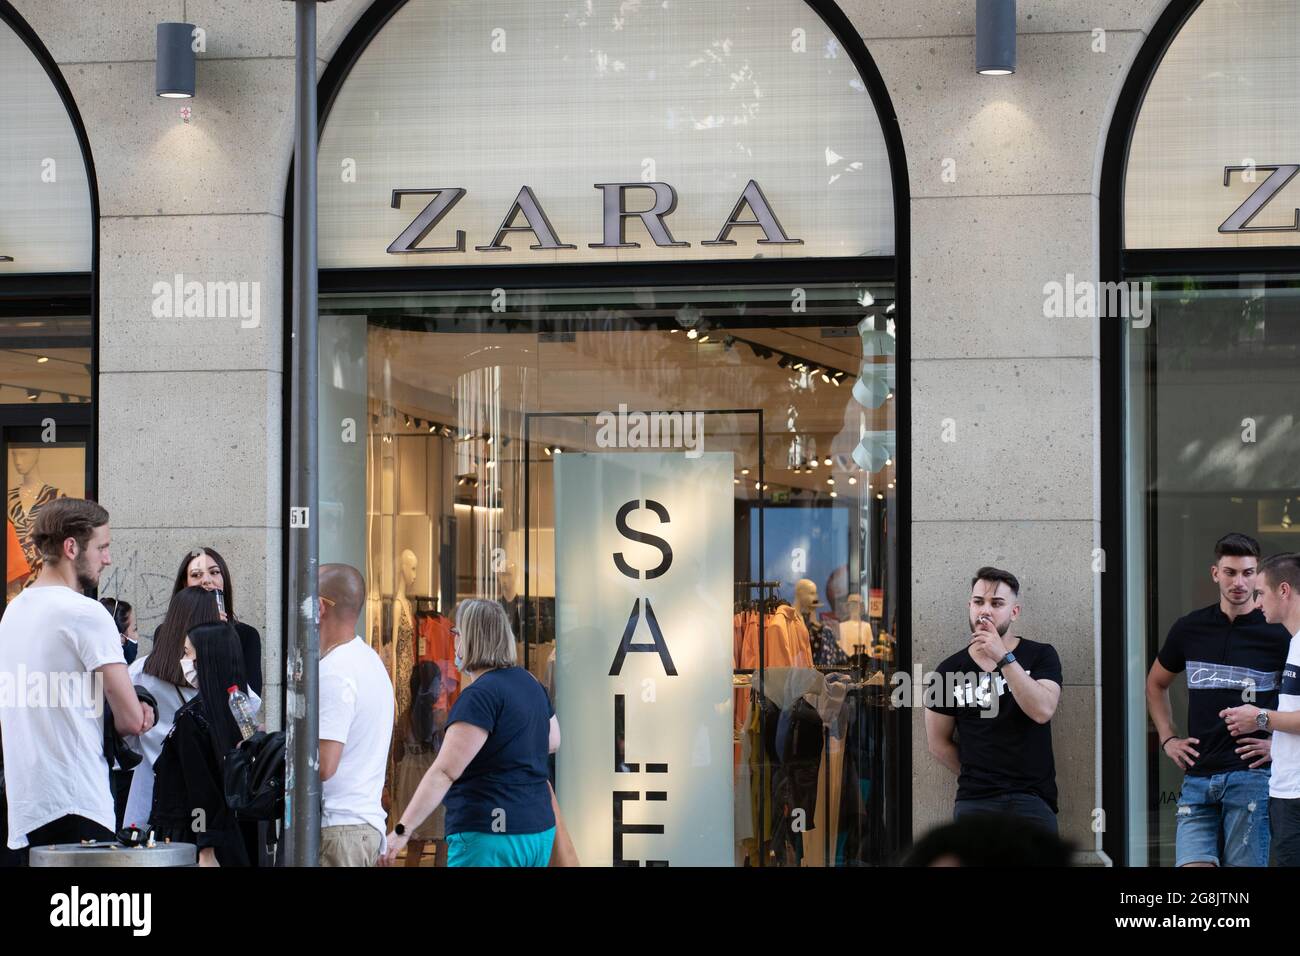 Menschen vor den Zara. Viele Menschen nutzen den Samstag den 4. Juli 2020  UM in der Innenstadt in München Einkäufe zu tätigen und durch die Geschäfte  zu stöbern. VOR einigen Läden gab